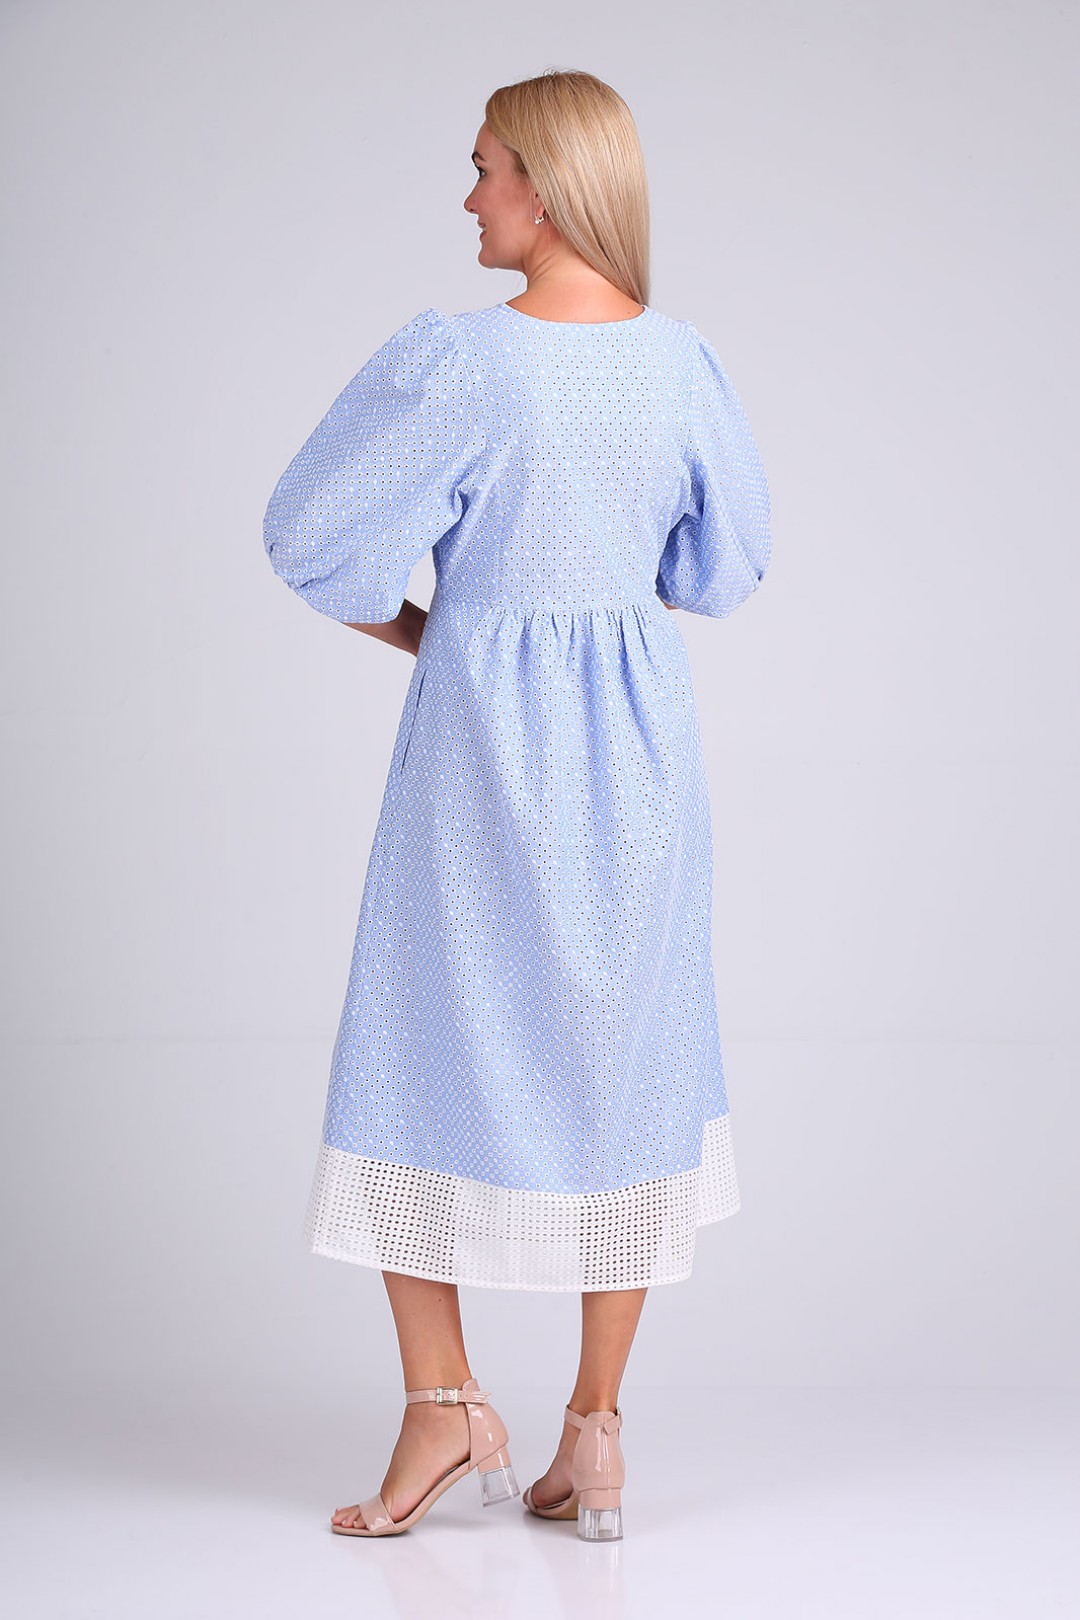 Платье FloVia 4094 голубо-белый